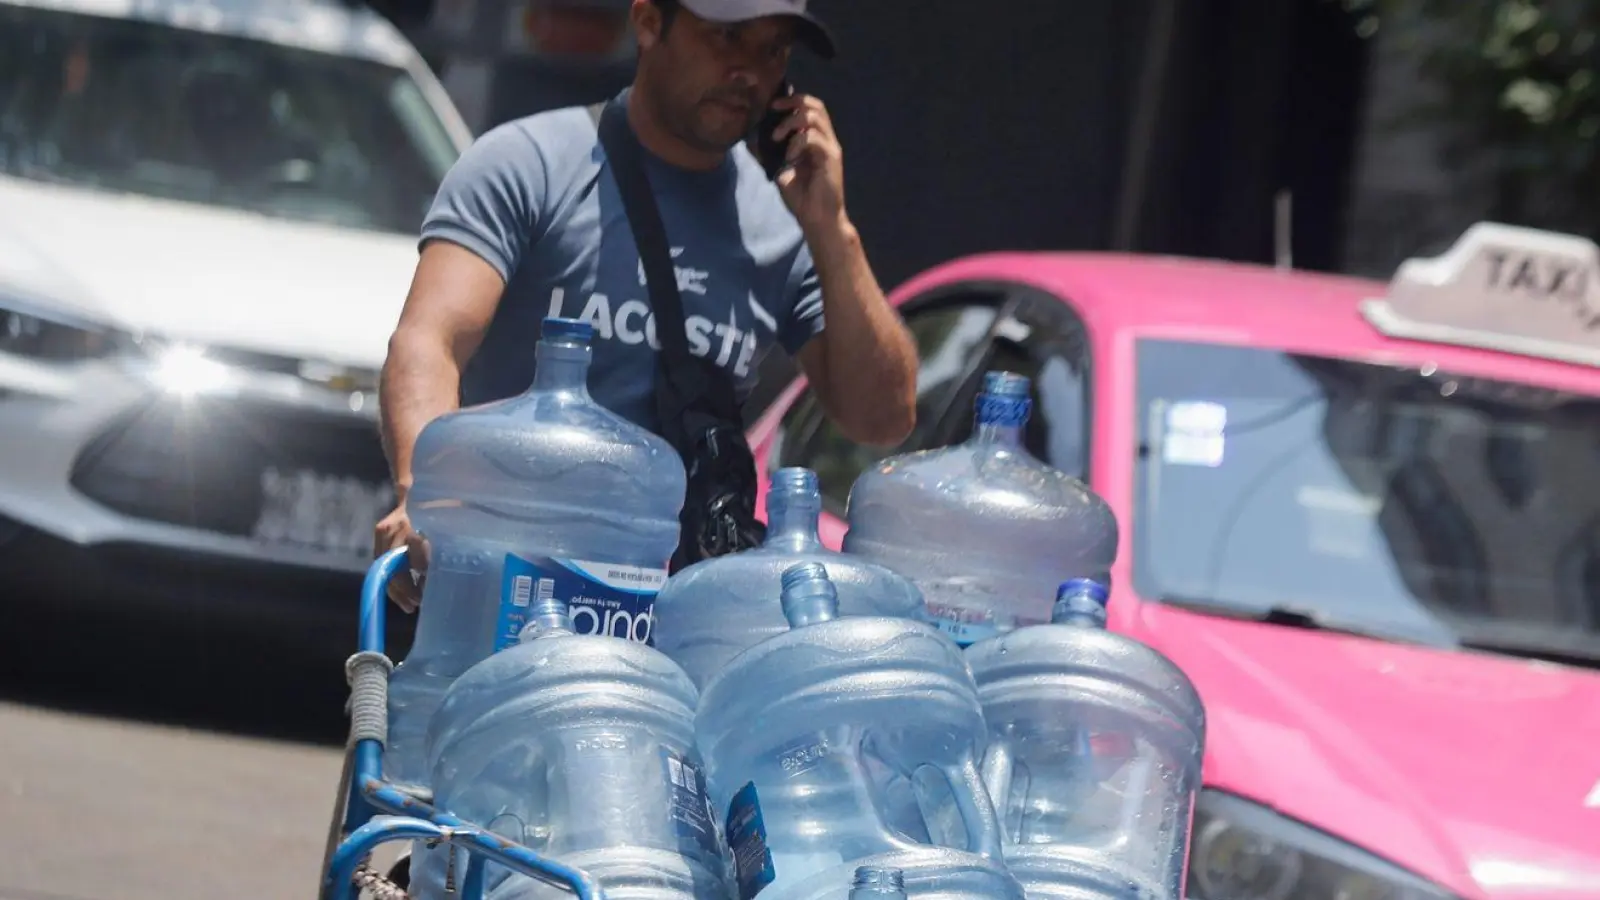 Ein Mann geht mit leeren Wasserkanistern durch eine Straße in Mexiko-Stadt. In 27 der 32 Bundesstaaten in Mexiko liegen die Temperaturen bei mehr als 40 Grad. (Foto: Gerardo Vieyra/dpa)